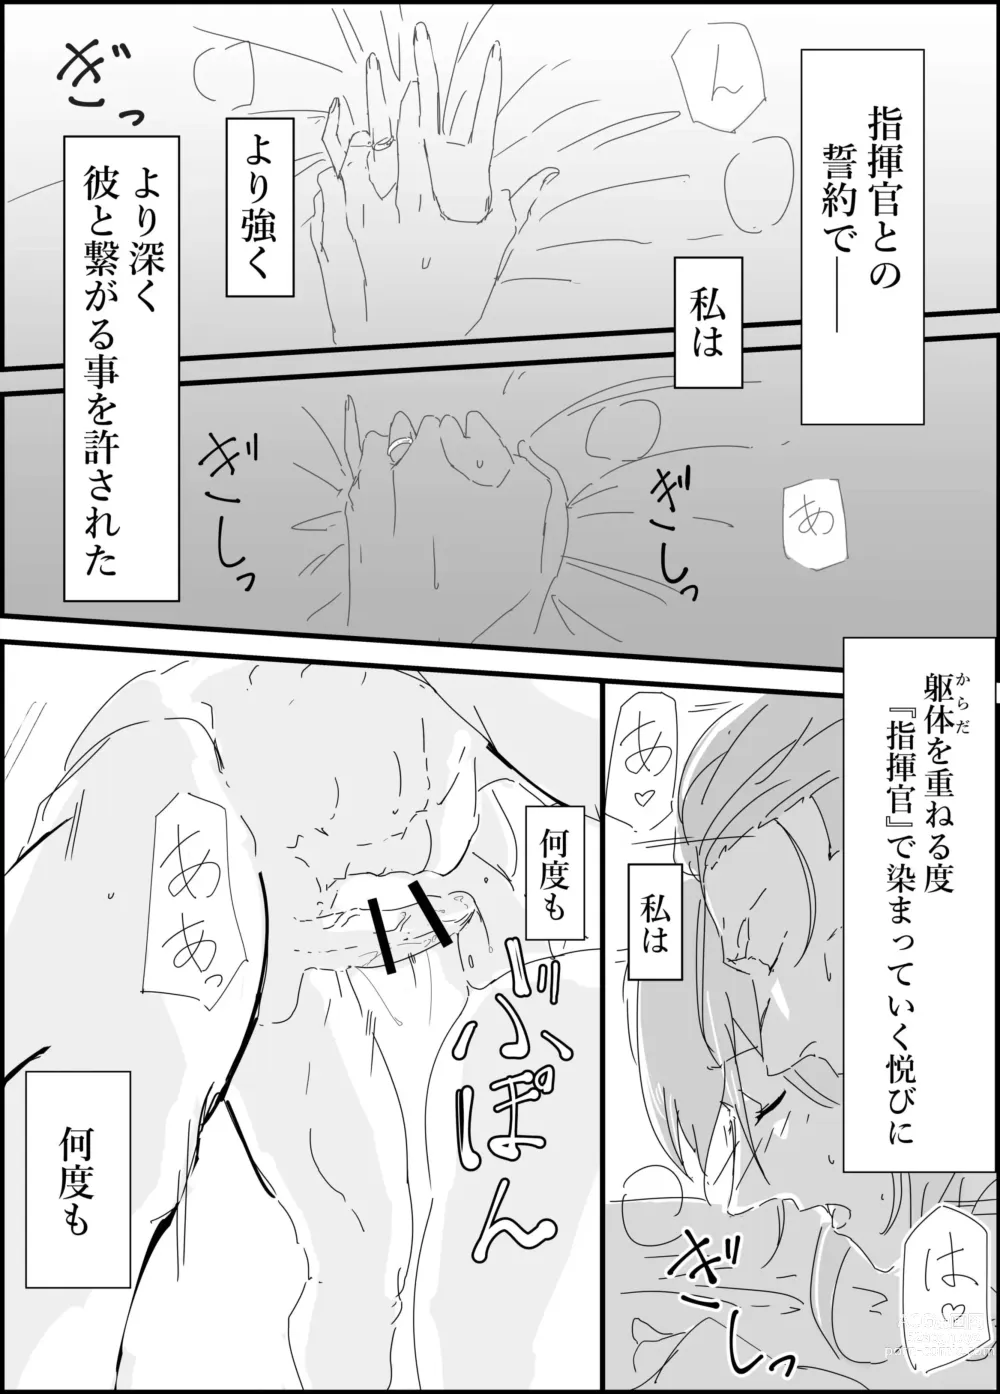 Page 5 of doujinshi Haruta san to.